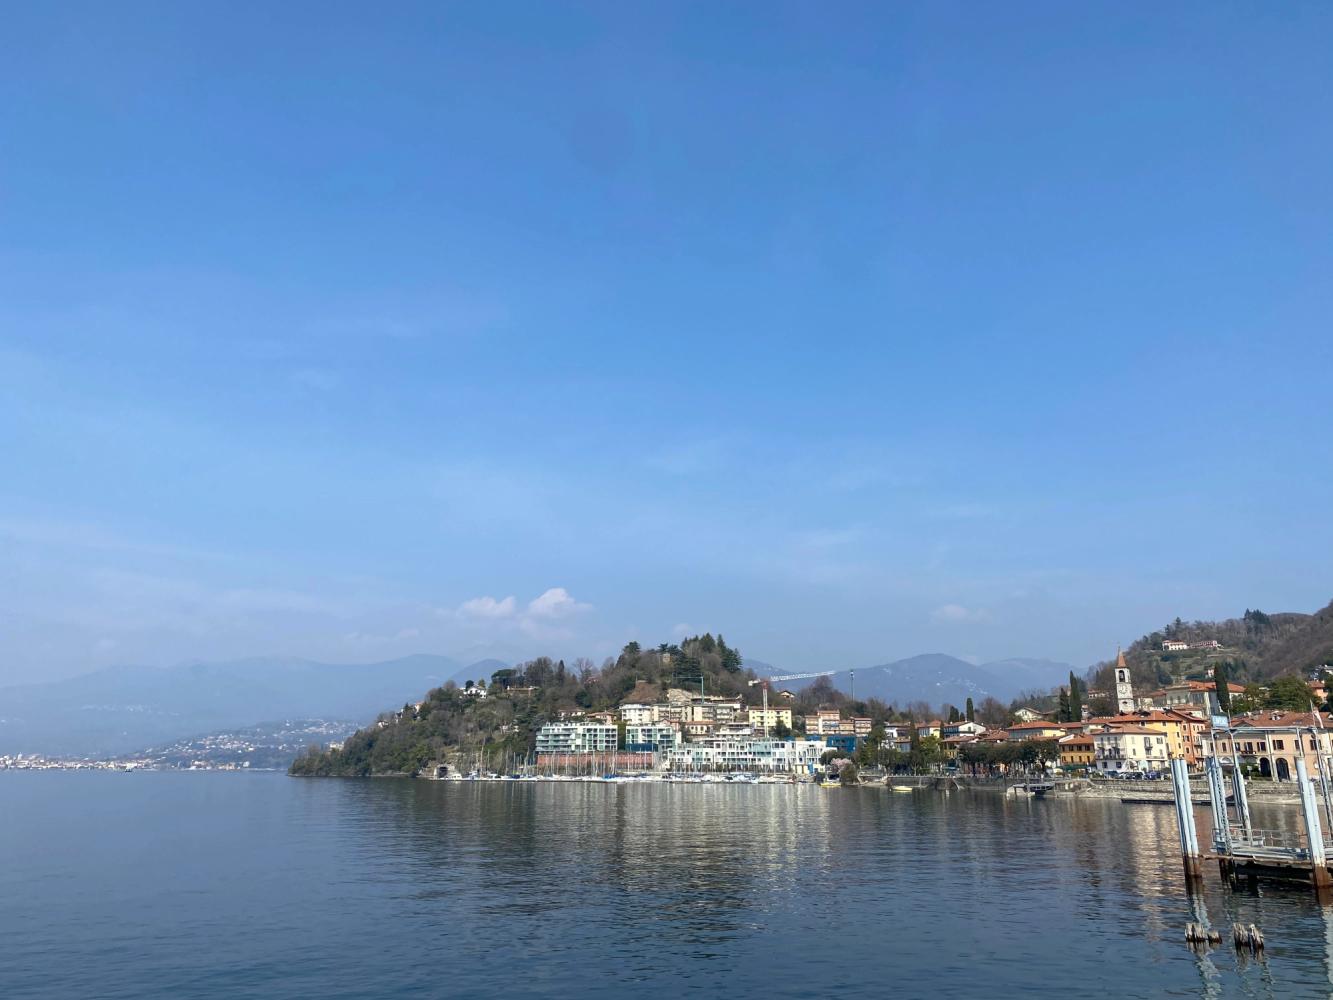 Laveno Mombello surrounded by Lake Maggiore